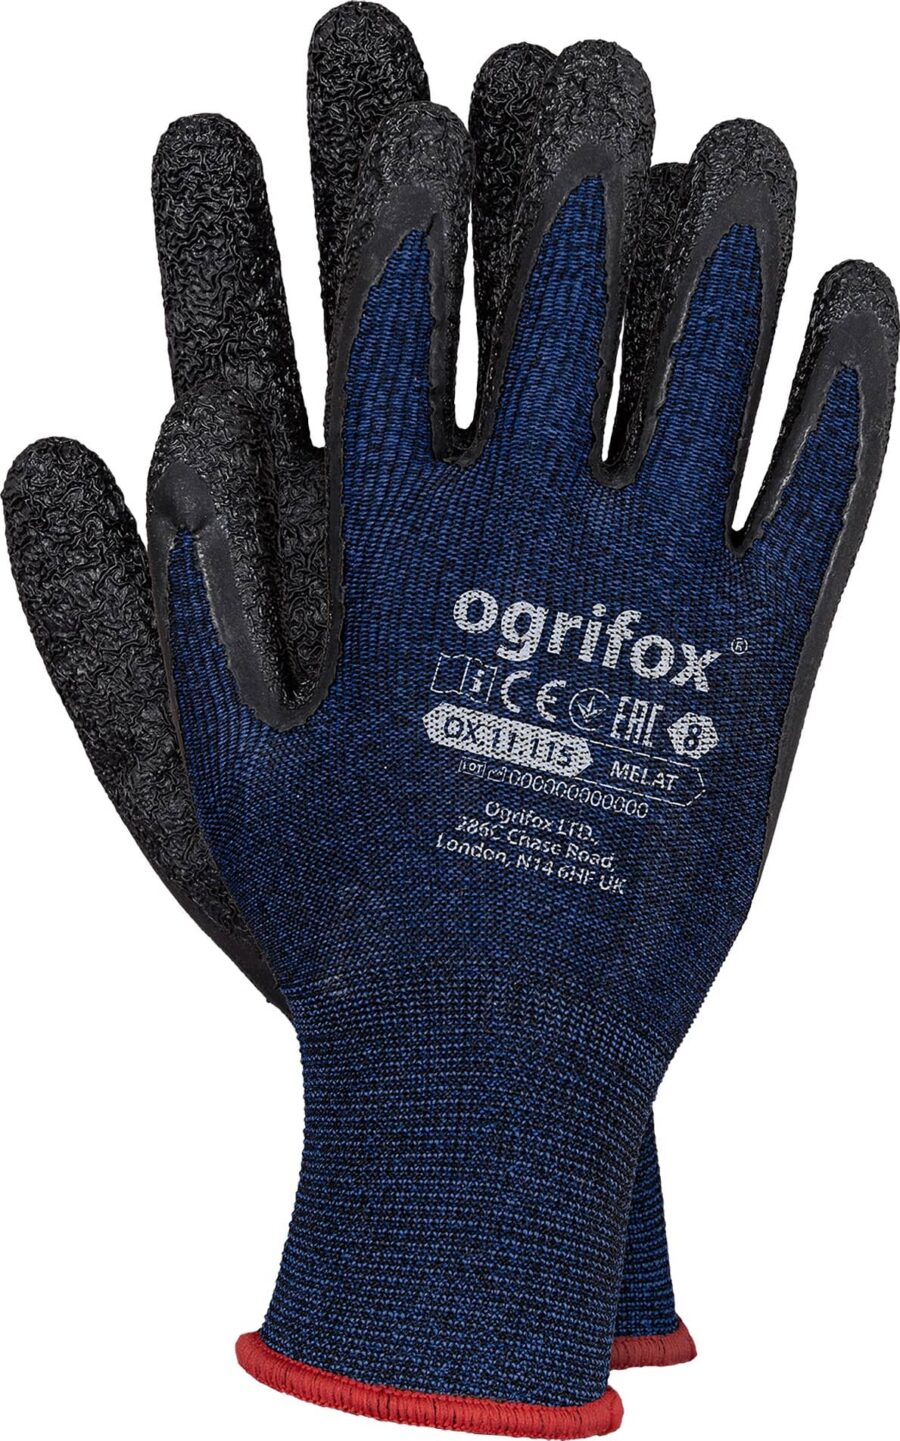 Pracovní rukavice máčené v latexu SPANDEX OX NAVY